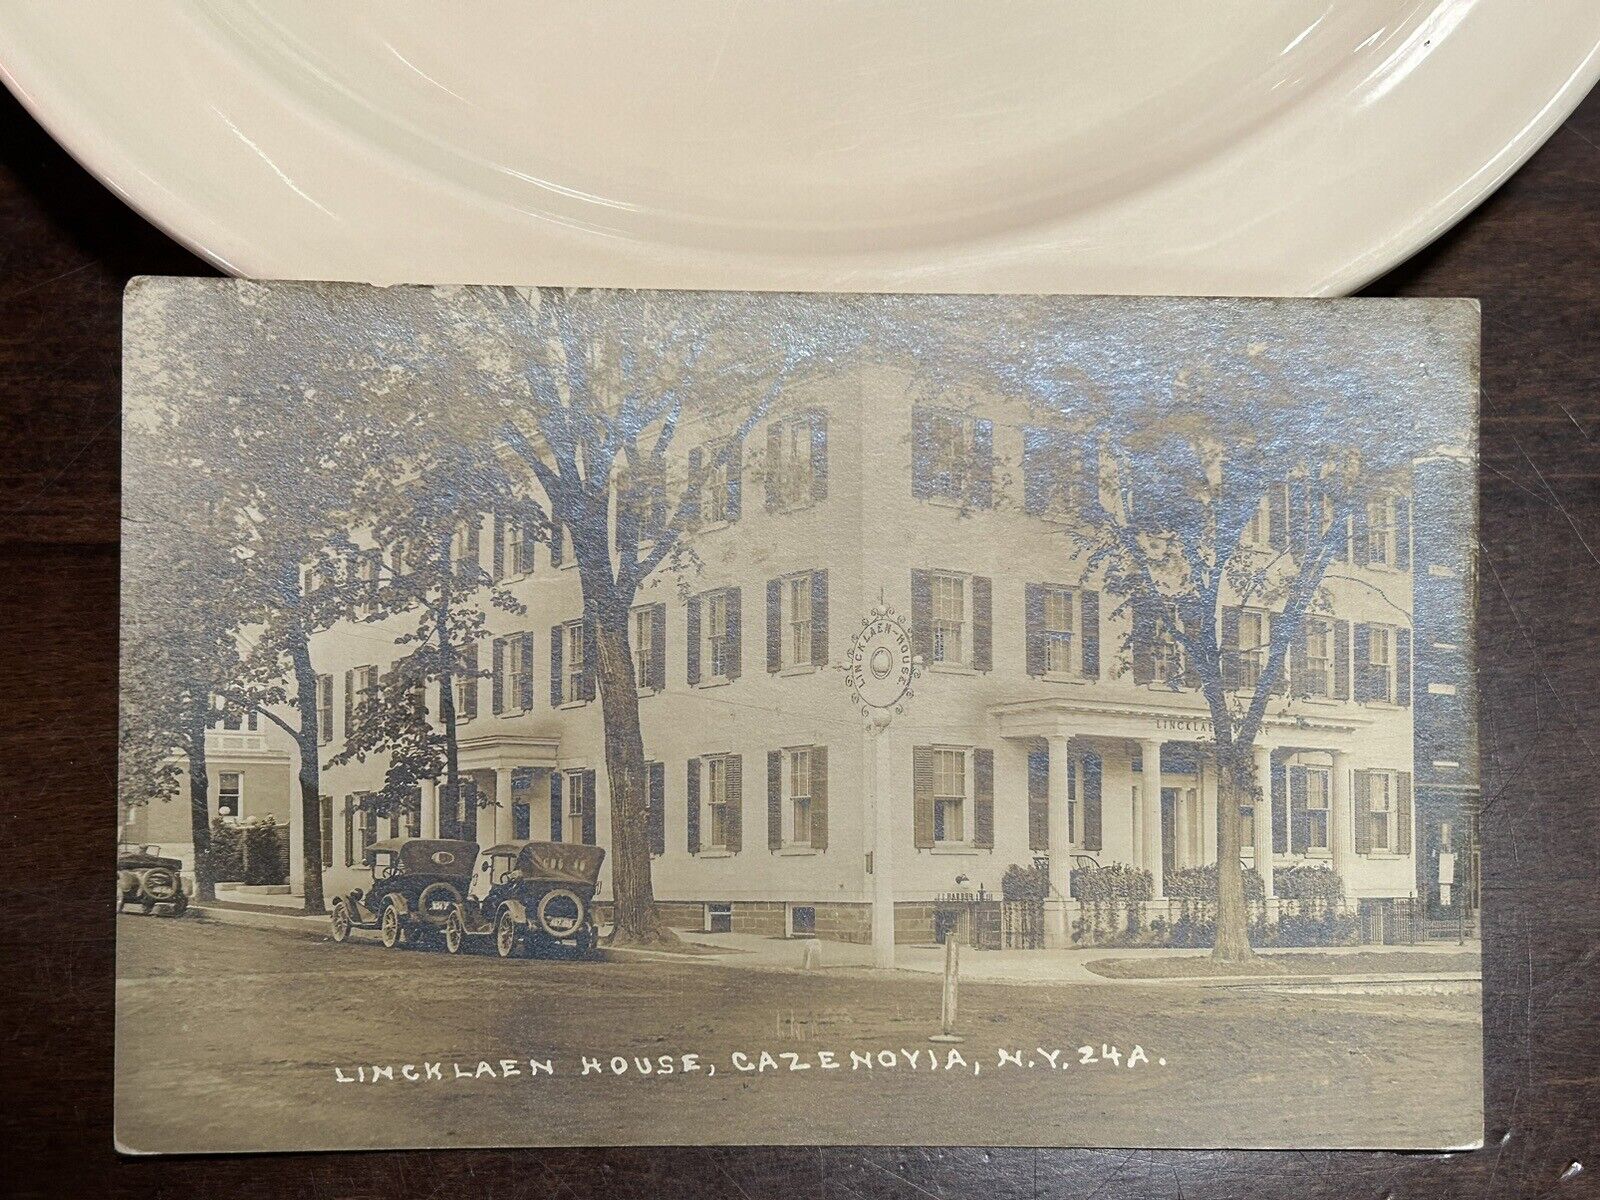 Lincklaen House, Cazenoyia N. Y. 1919 RPPC Postcard Le